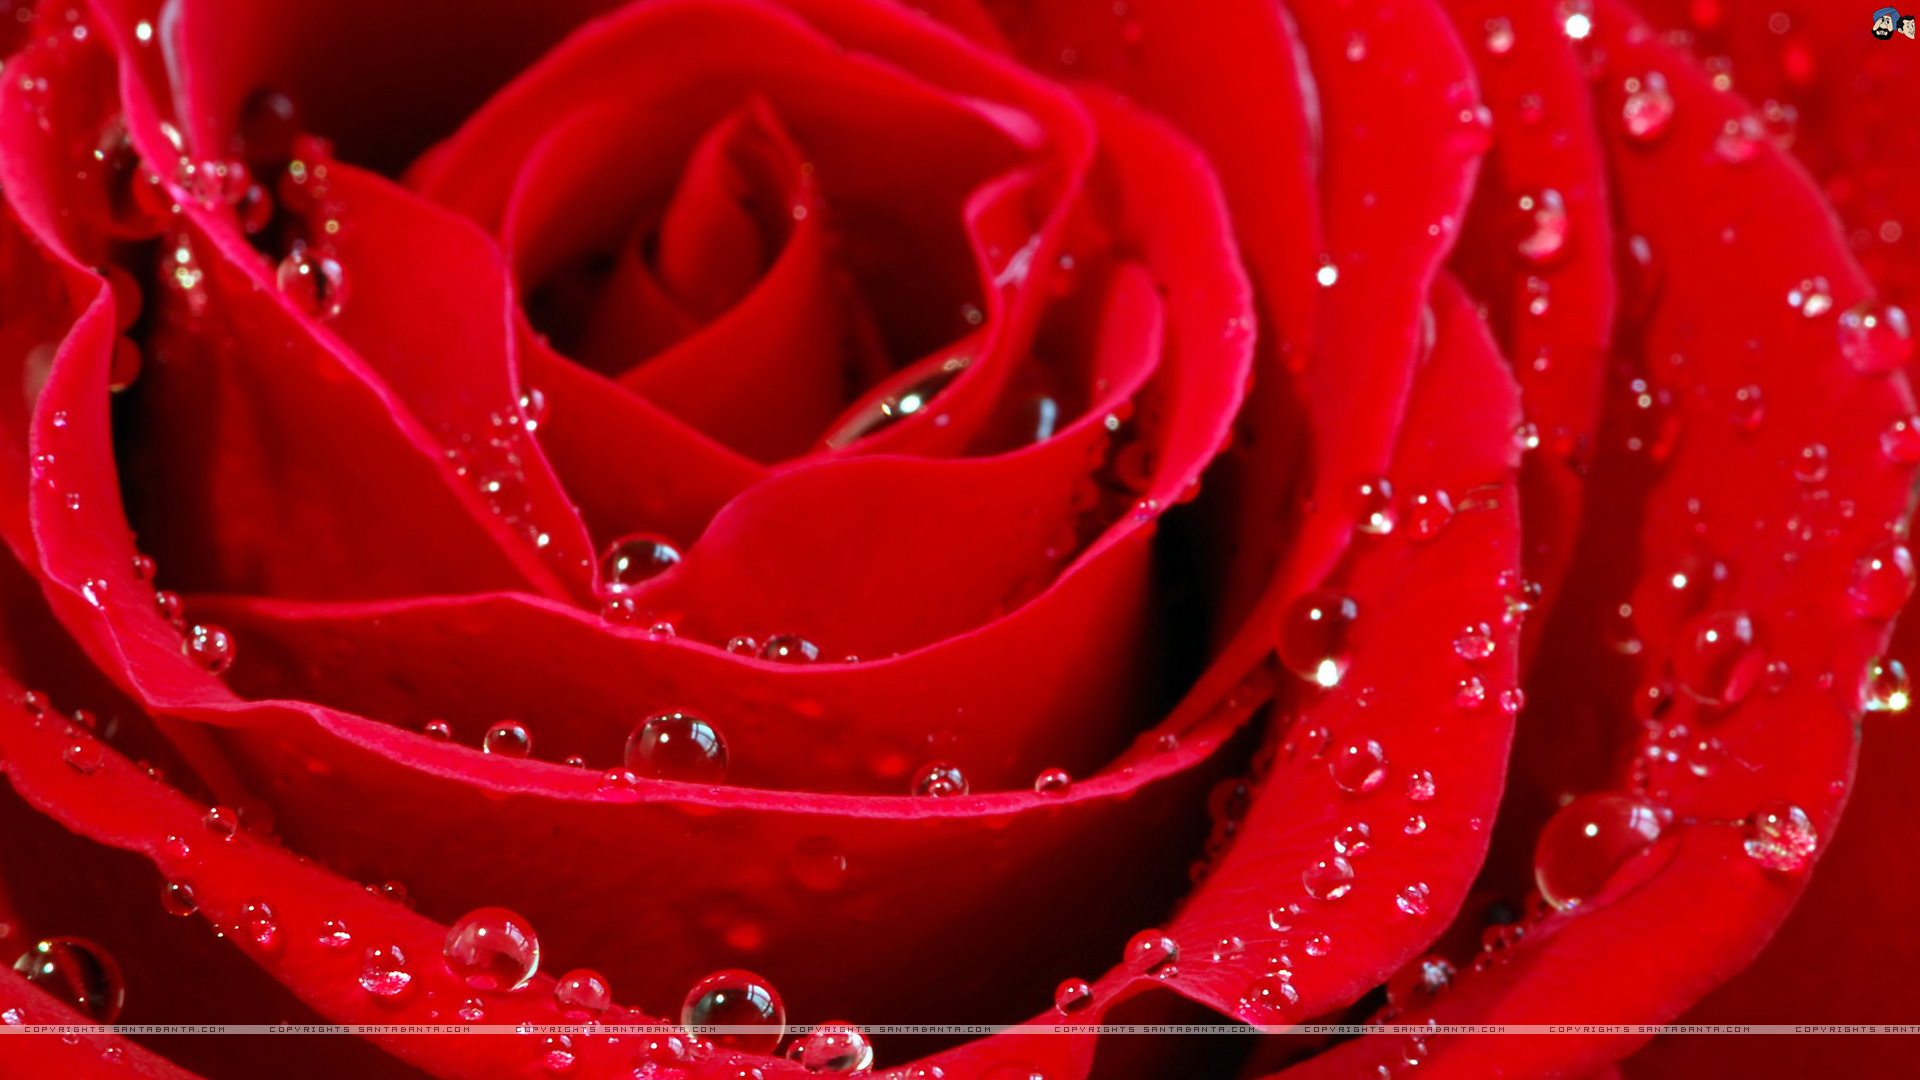 Thread beautiful Roses Wallpaper download